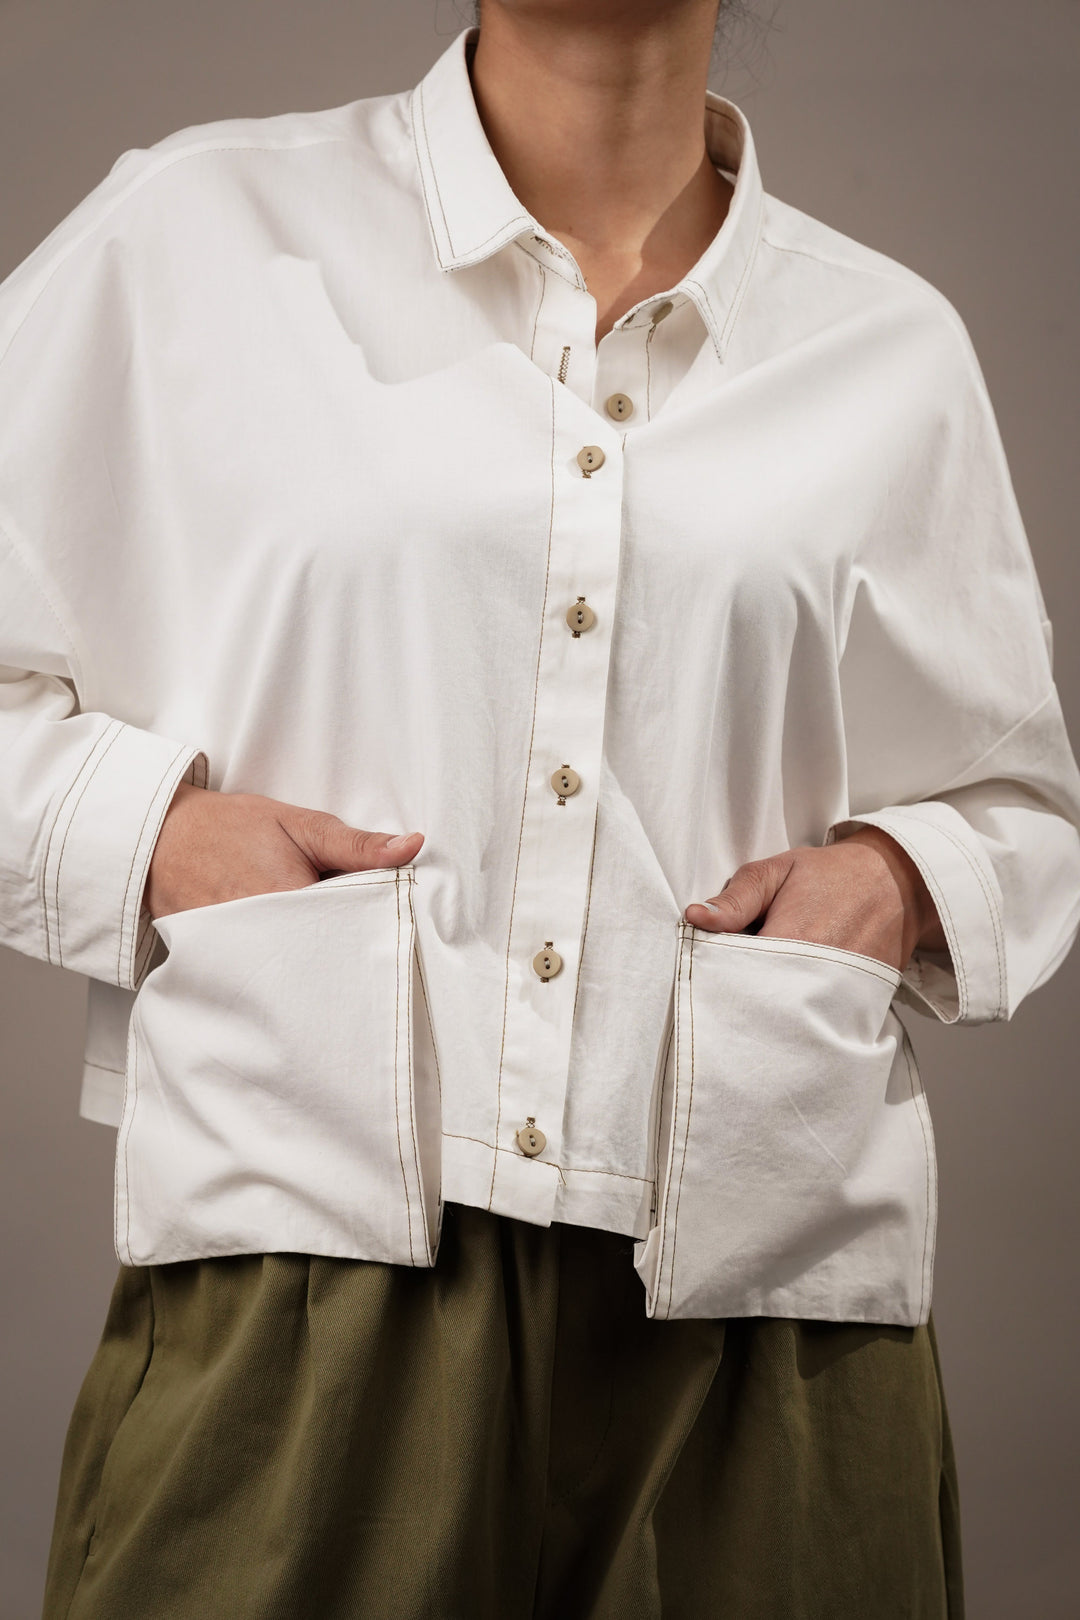 Stylish white shirt with extended hem